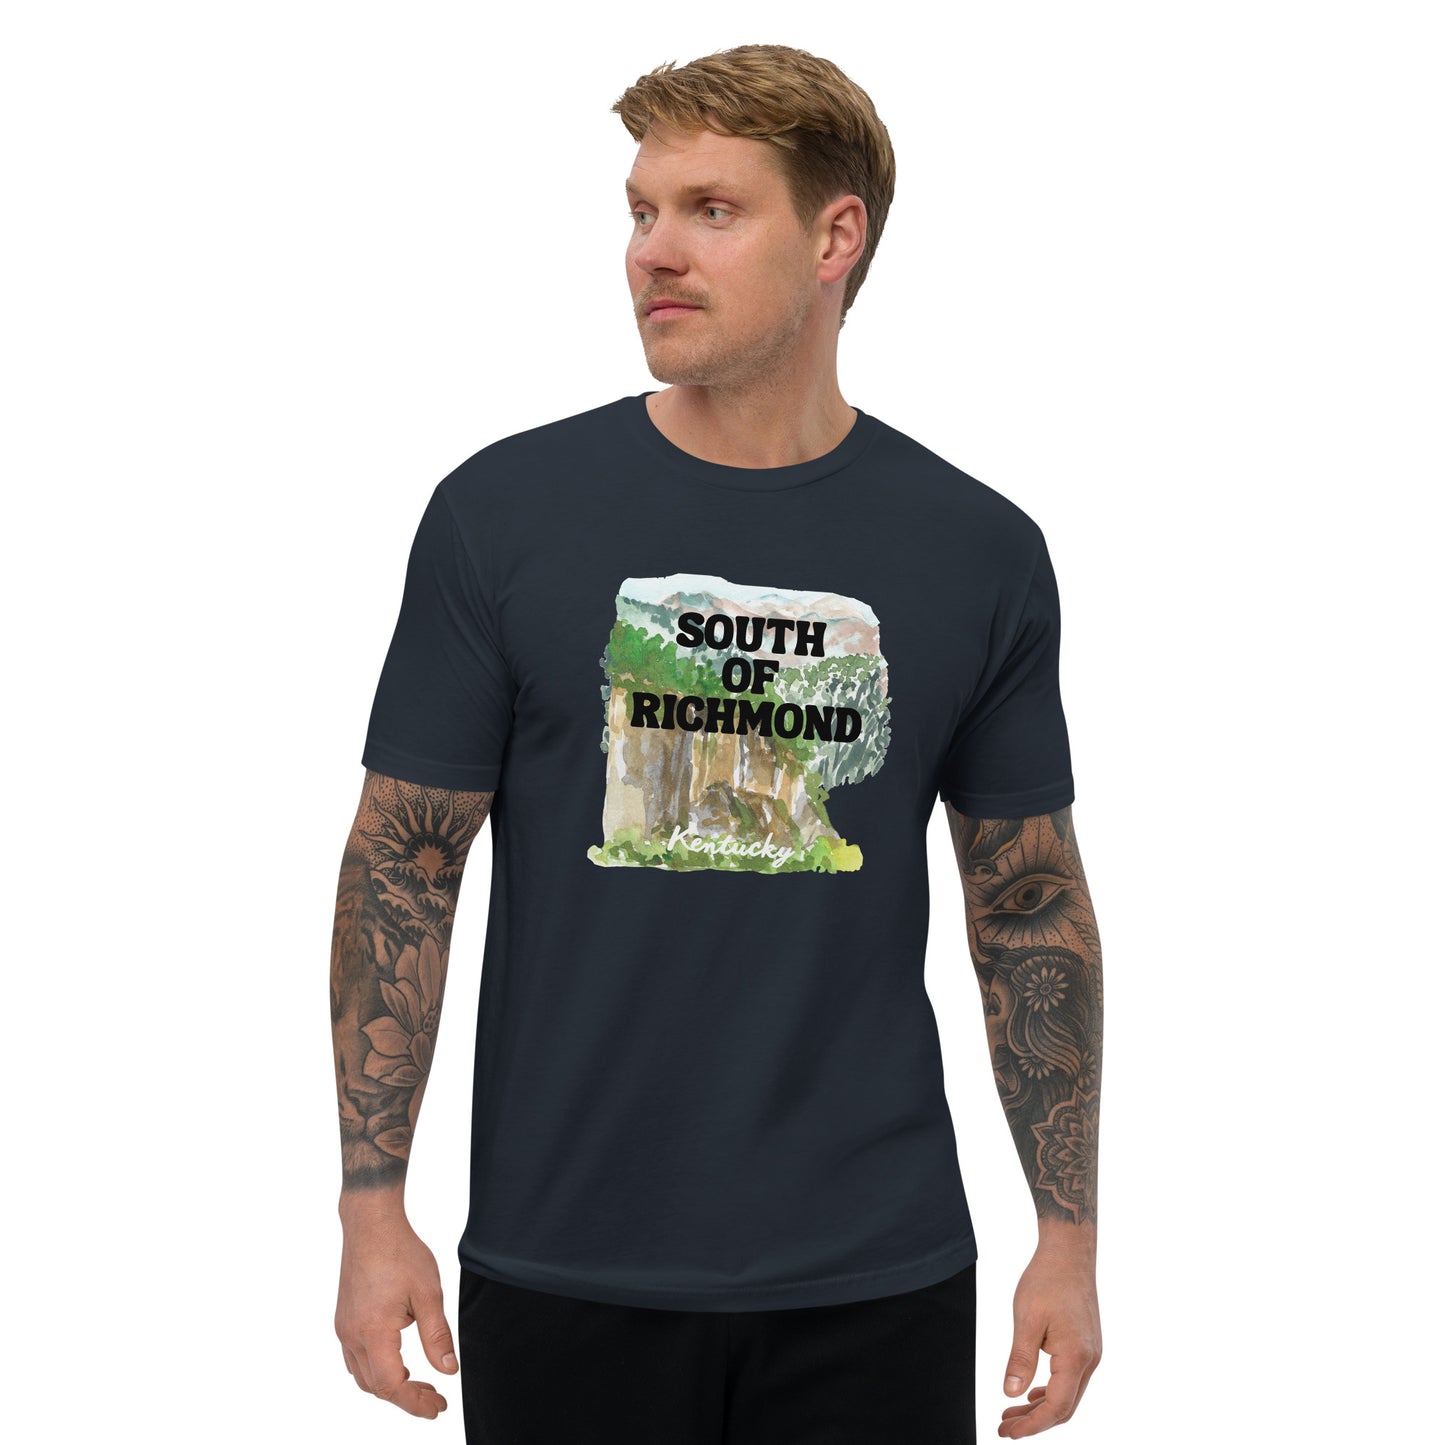 South of Richmond - Kentucky - Short Sleeve T-shirt